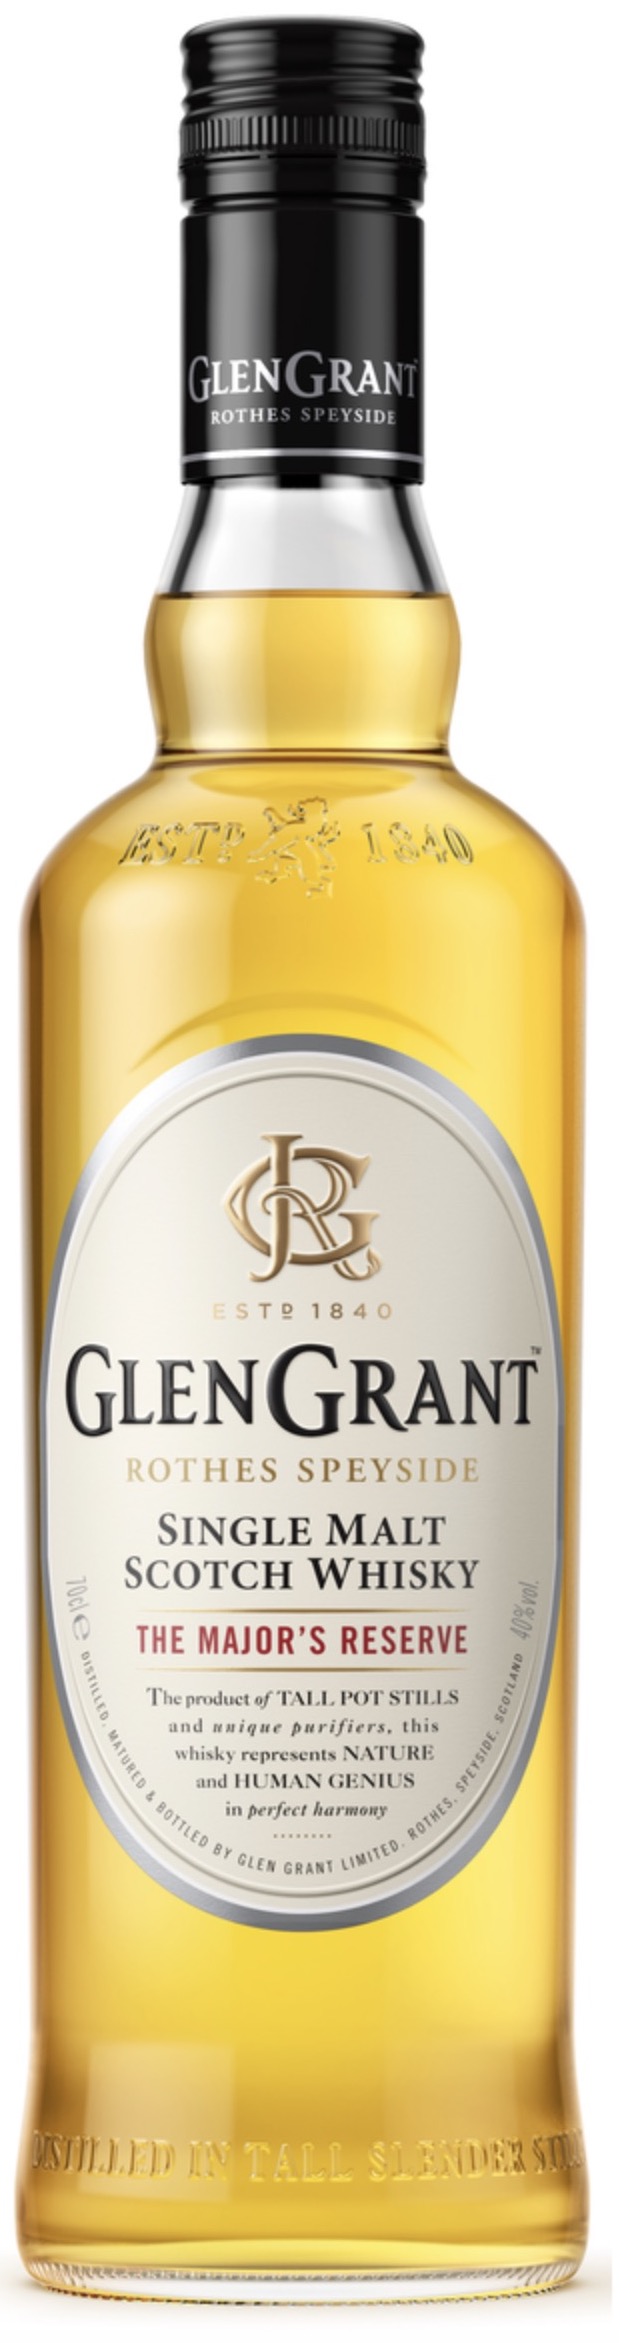 GLEN GRANT Single Malt Scotch Whisky The Mayor's Reserve 40% 0,7L